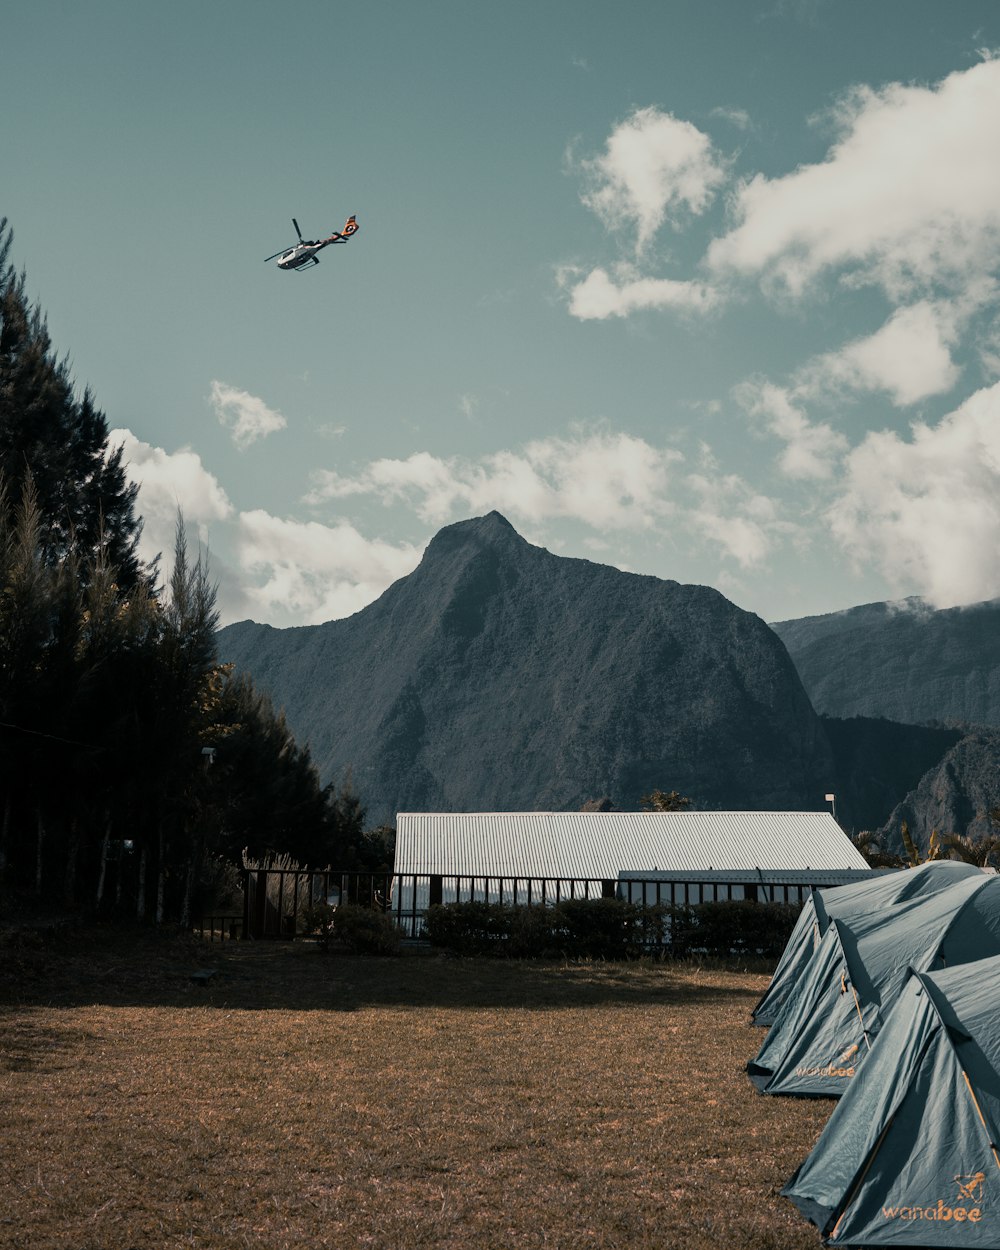 Hubschrauber in der Luft über Haus und Berg